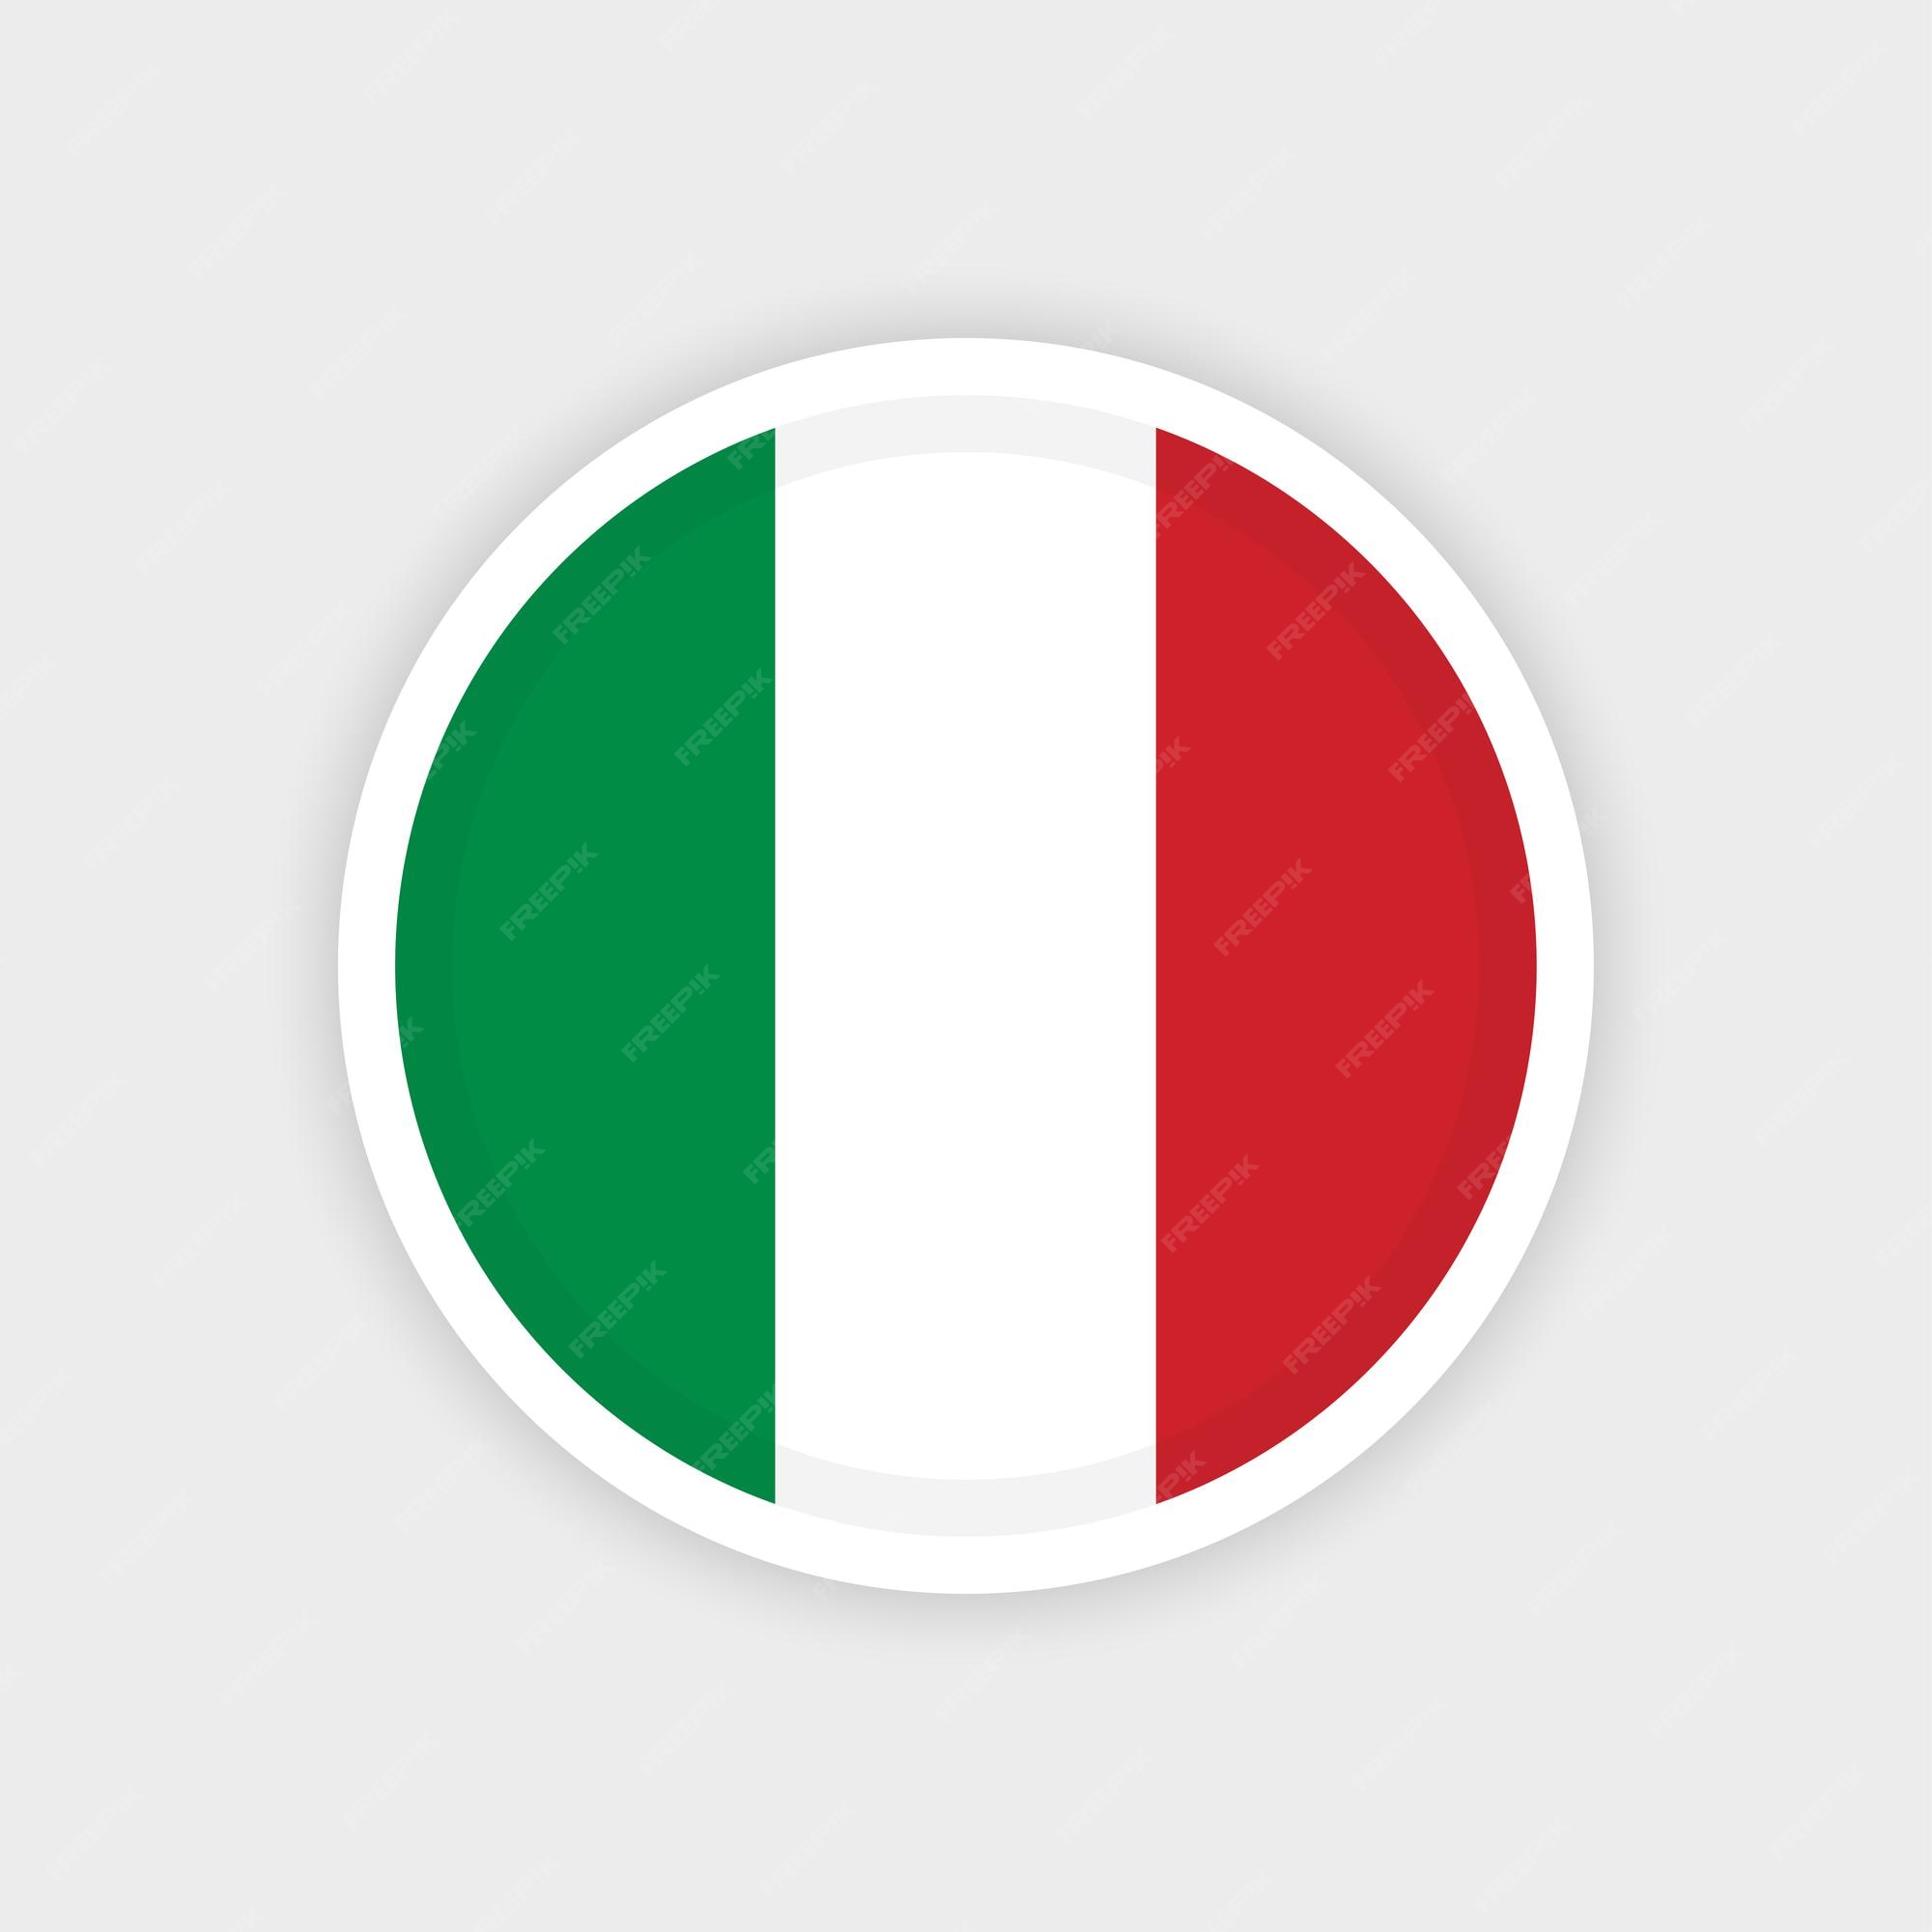 Hãy khám phá vector cờ Italy với thiết kế tuyệt đẹp và sắc nét. Làm cho bức ảnh của bạn trở nên độc đáo và phong phú hơn với vector này.